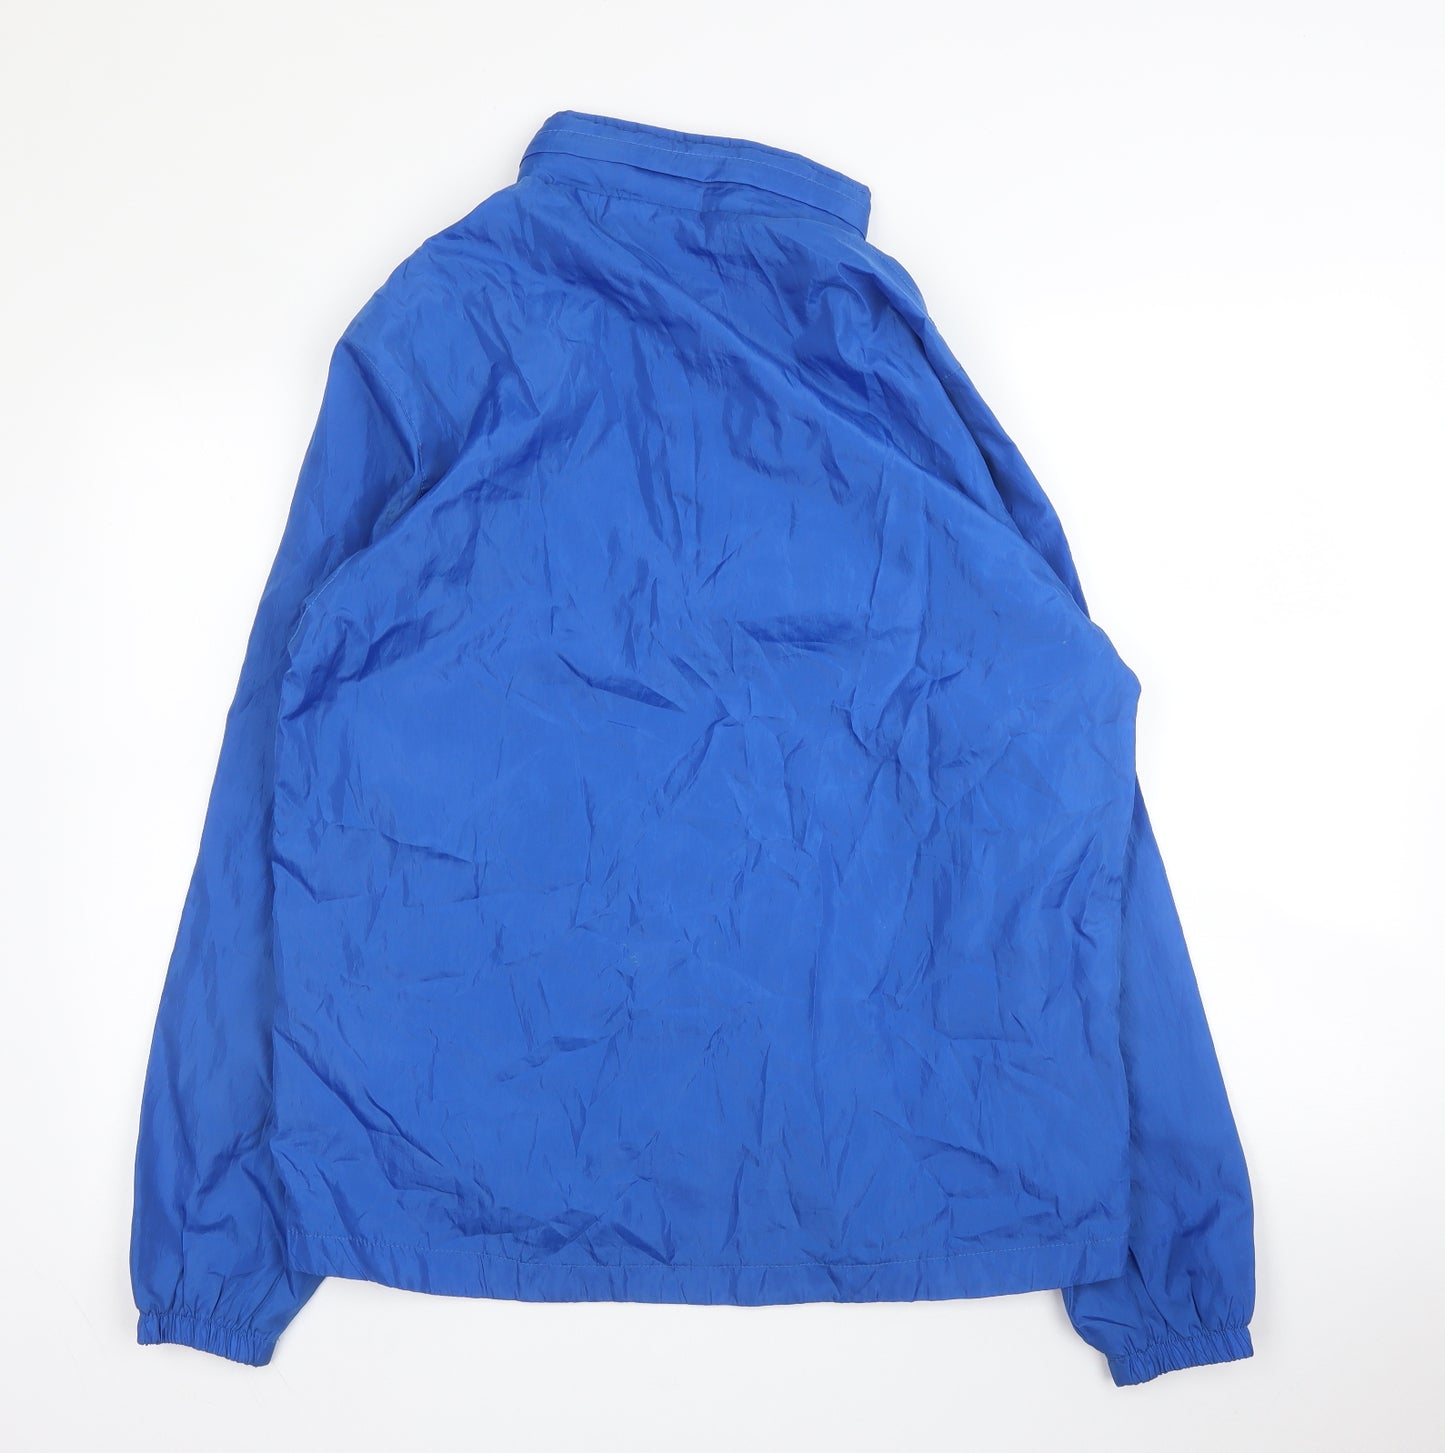 Juma Mens Blue   Rain Coat Coat Size M  Zip - Football